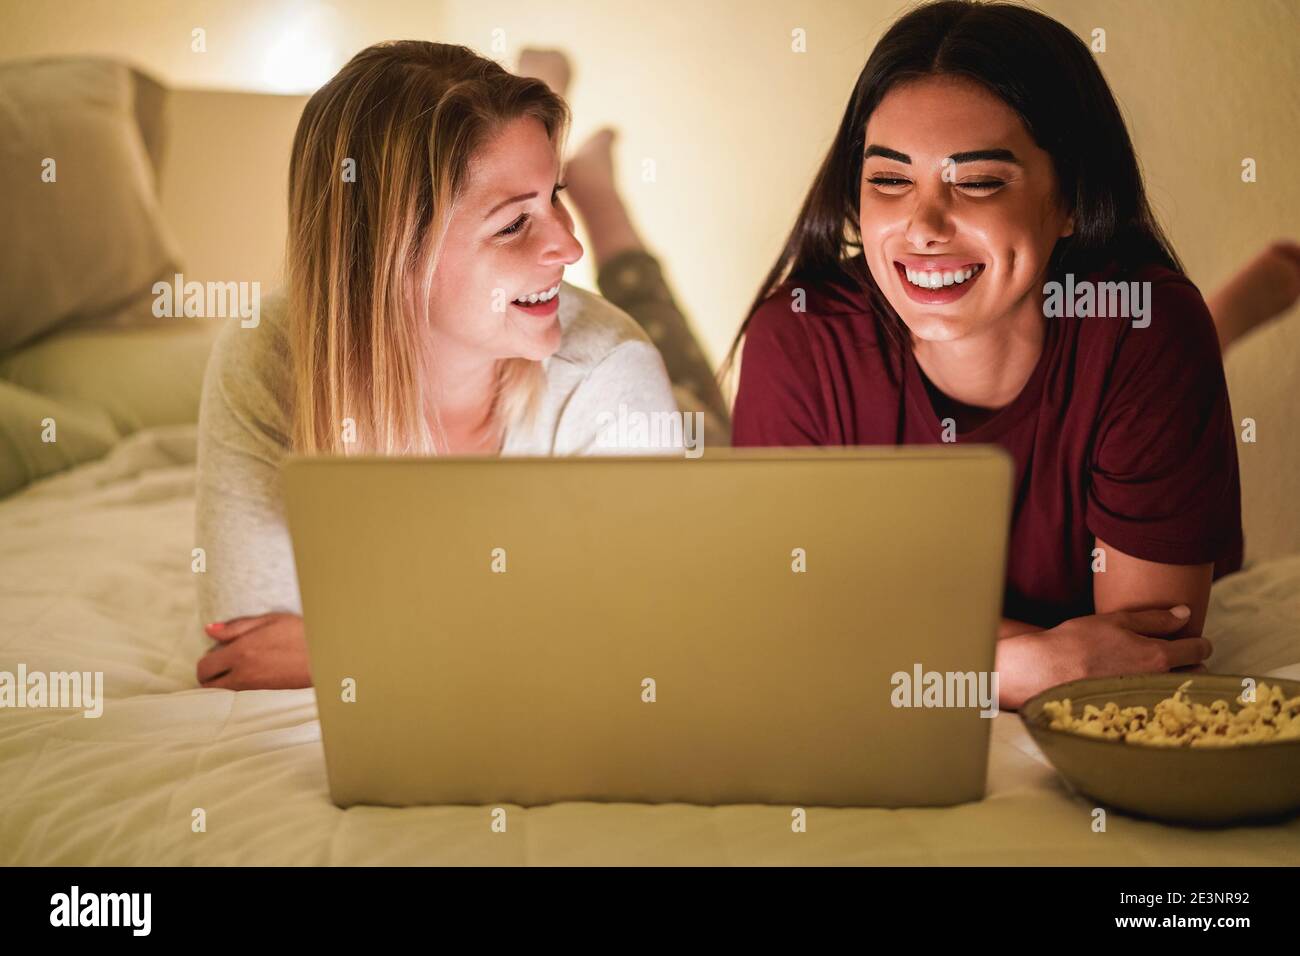 Zwei junge Freundinnen mit Laptop-Computer zusammen auf dem Bett Während Lockdown Isolation - Fokus auf das richtige Mädchen Stockfoto